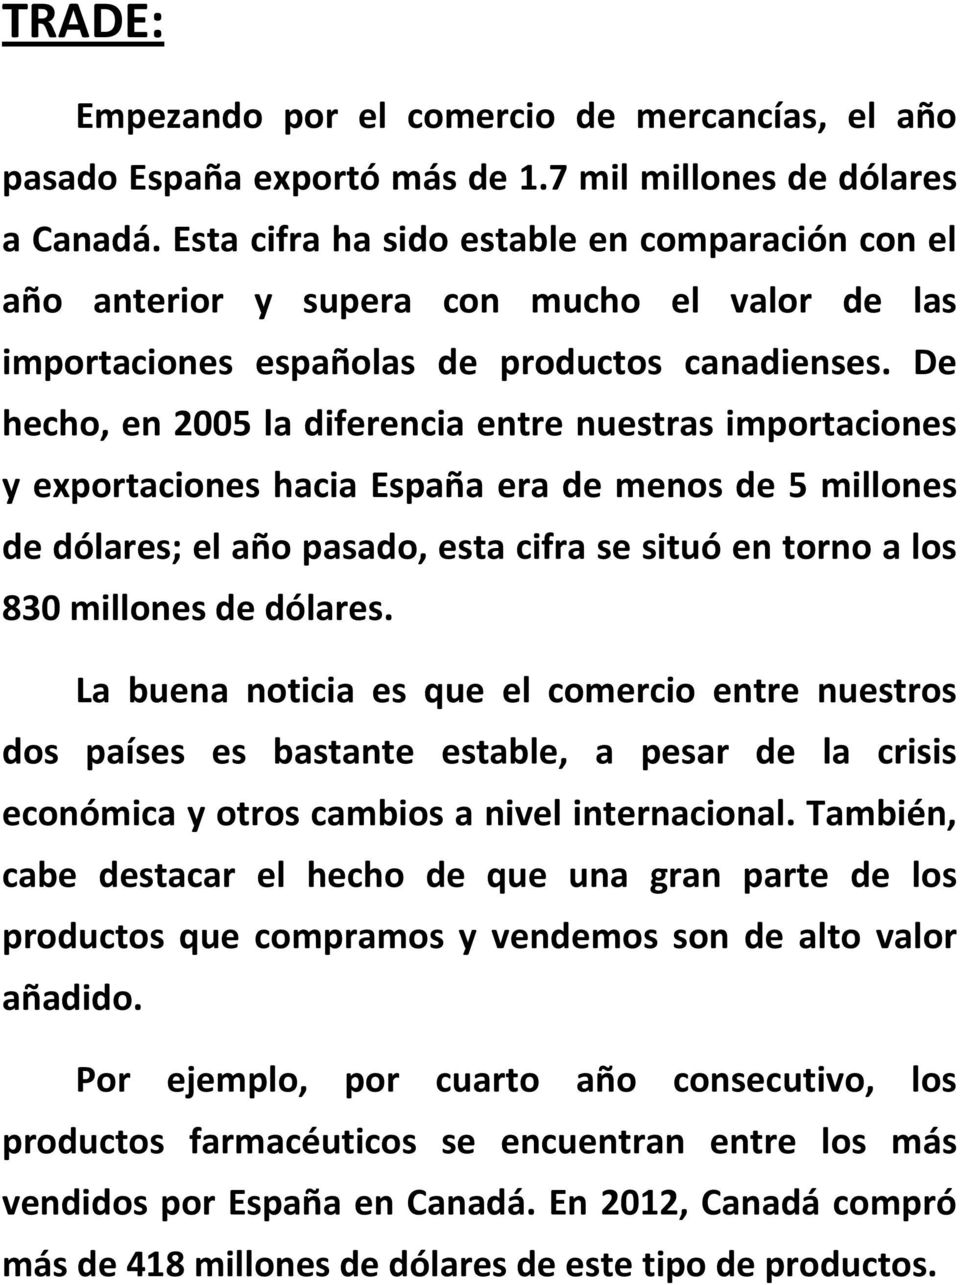 De hecho, en 2005 la diferencia entre nuestras importaciones y exportaciones hacia España era de menos de 5 millones de dólares; el año pasado, esta cifra se situó en torno a los 830 millones de